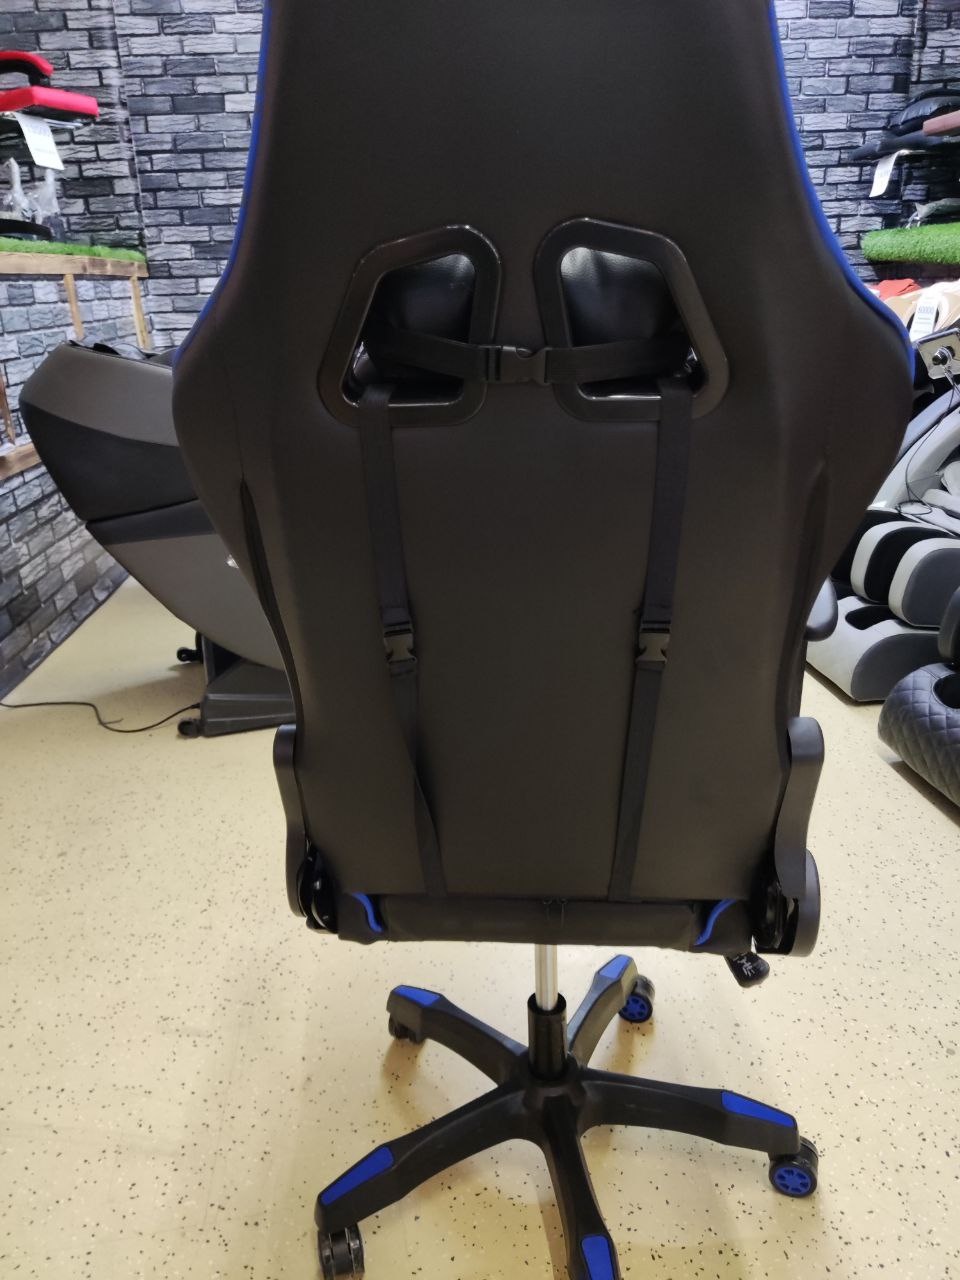 Компьютерный стул - 15 000 ₽, заказать онлайн.